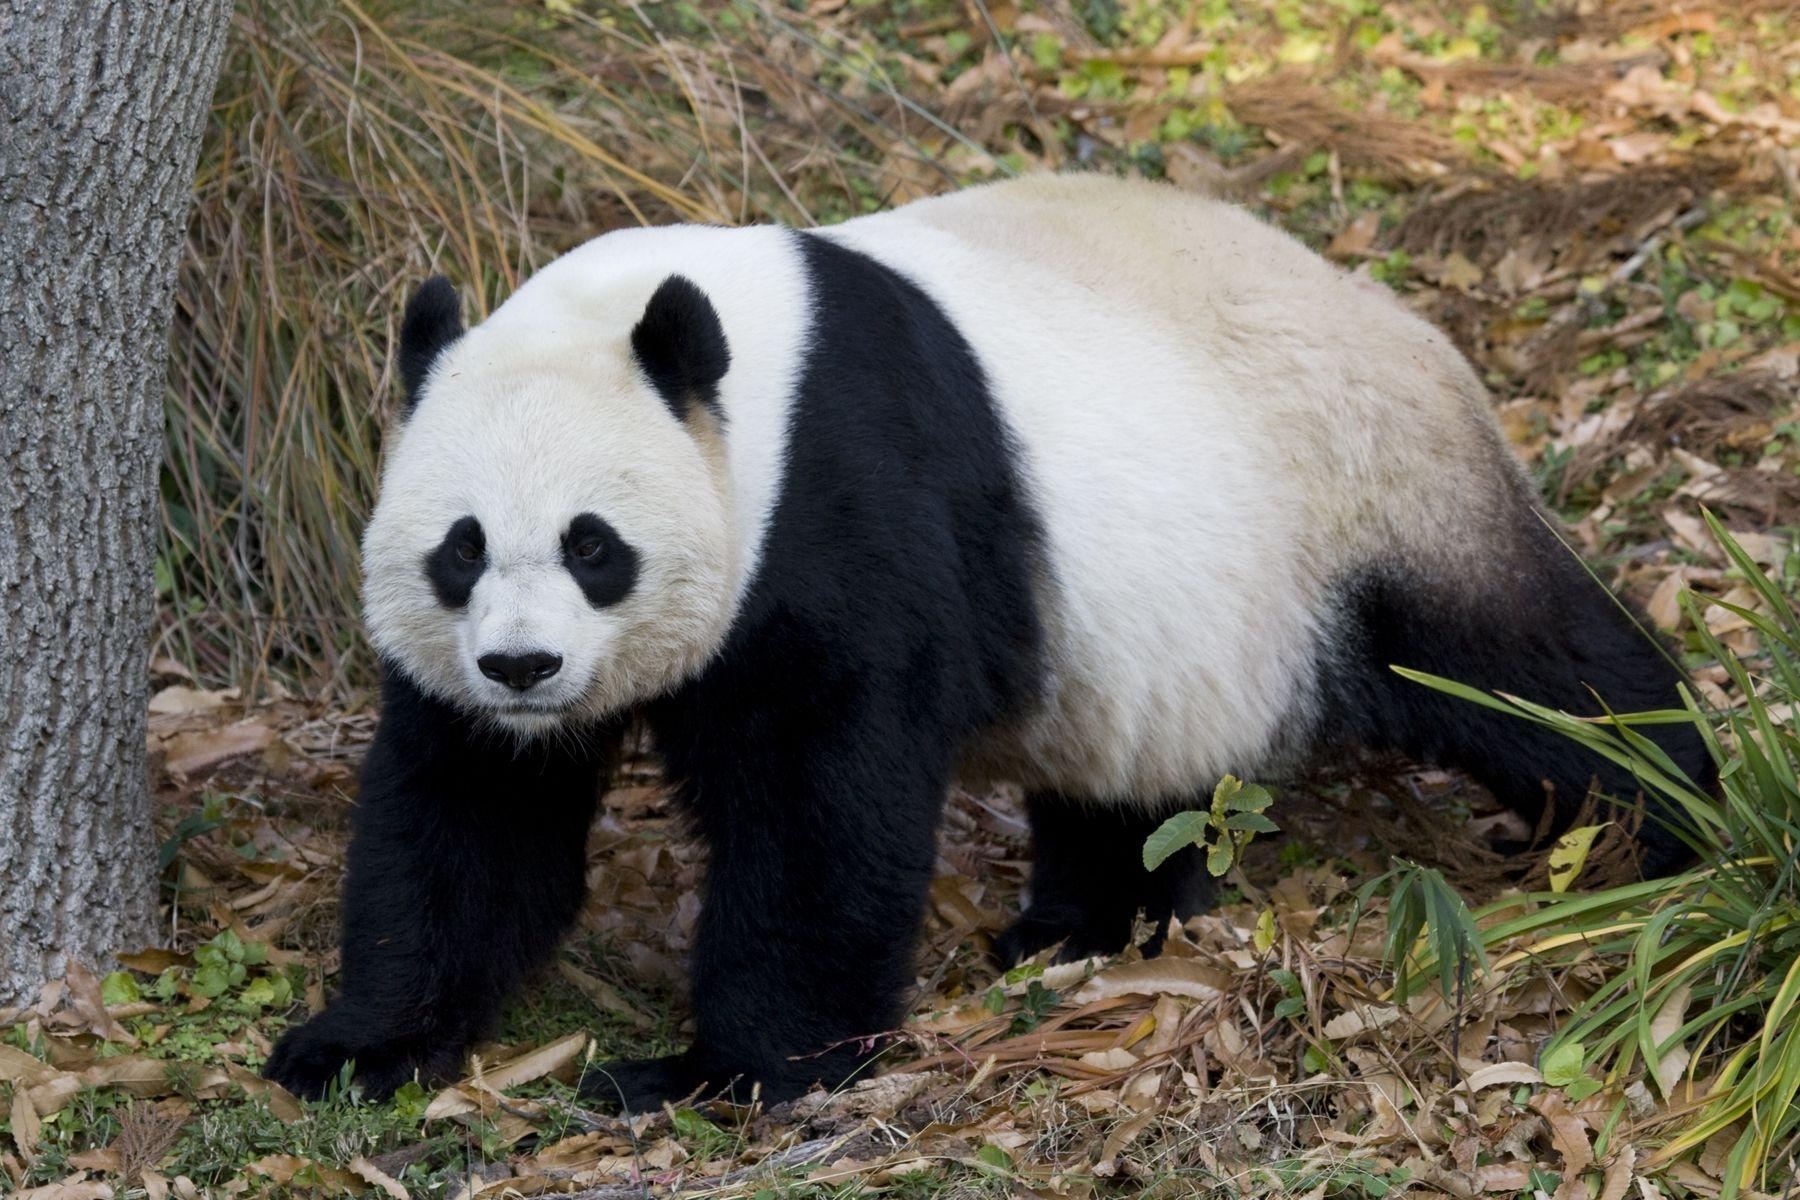 Mei Xiang, a giant panda at the Smithsonian's National Zoo